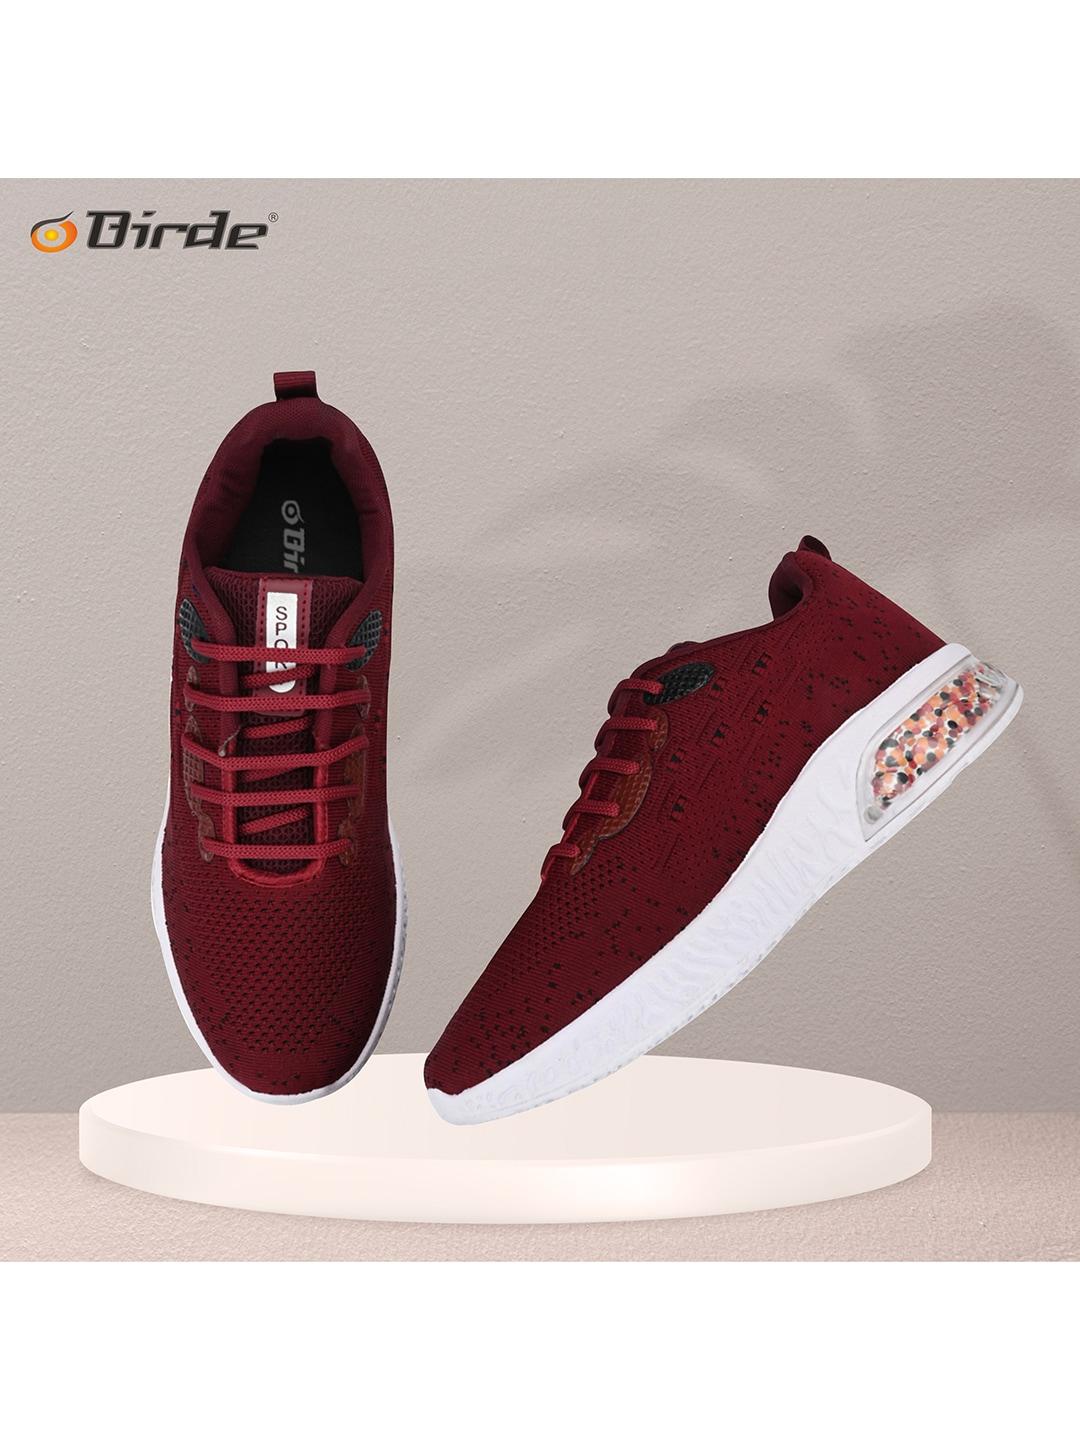 birde-men-maroon-woven-design-sneakers